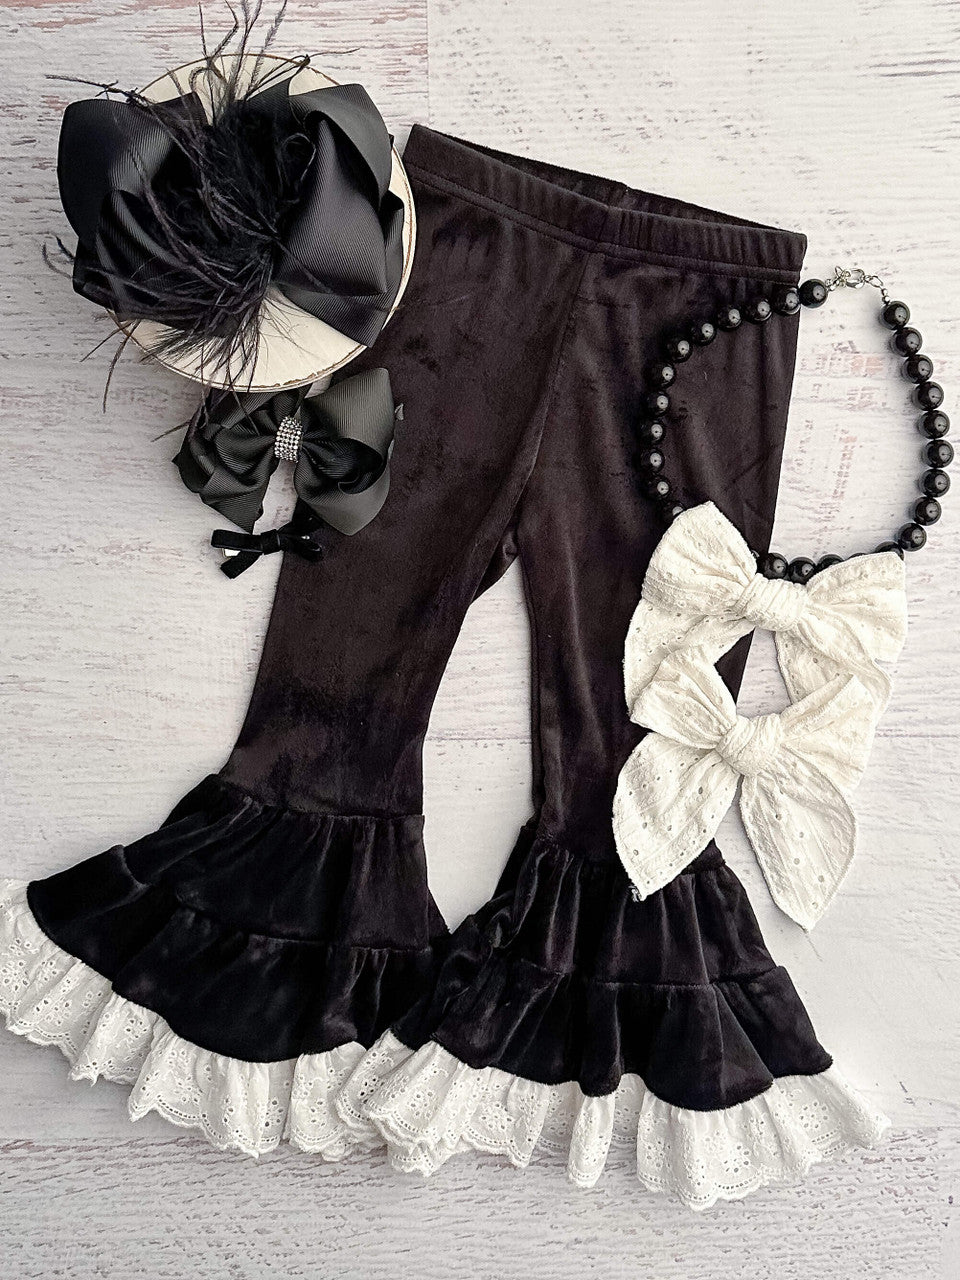 Black velvet leggings with white lace trim.